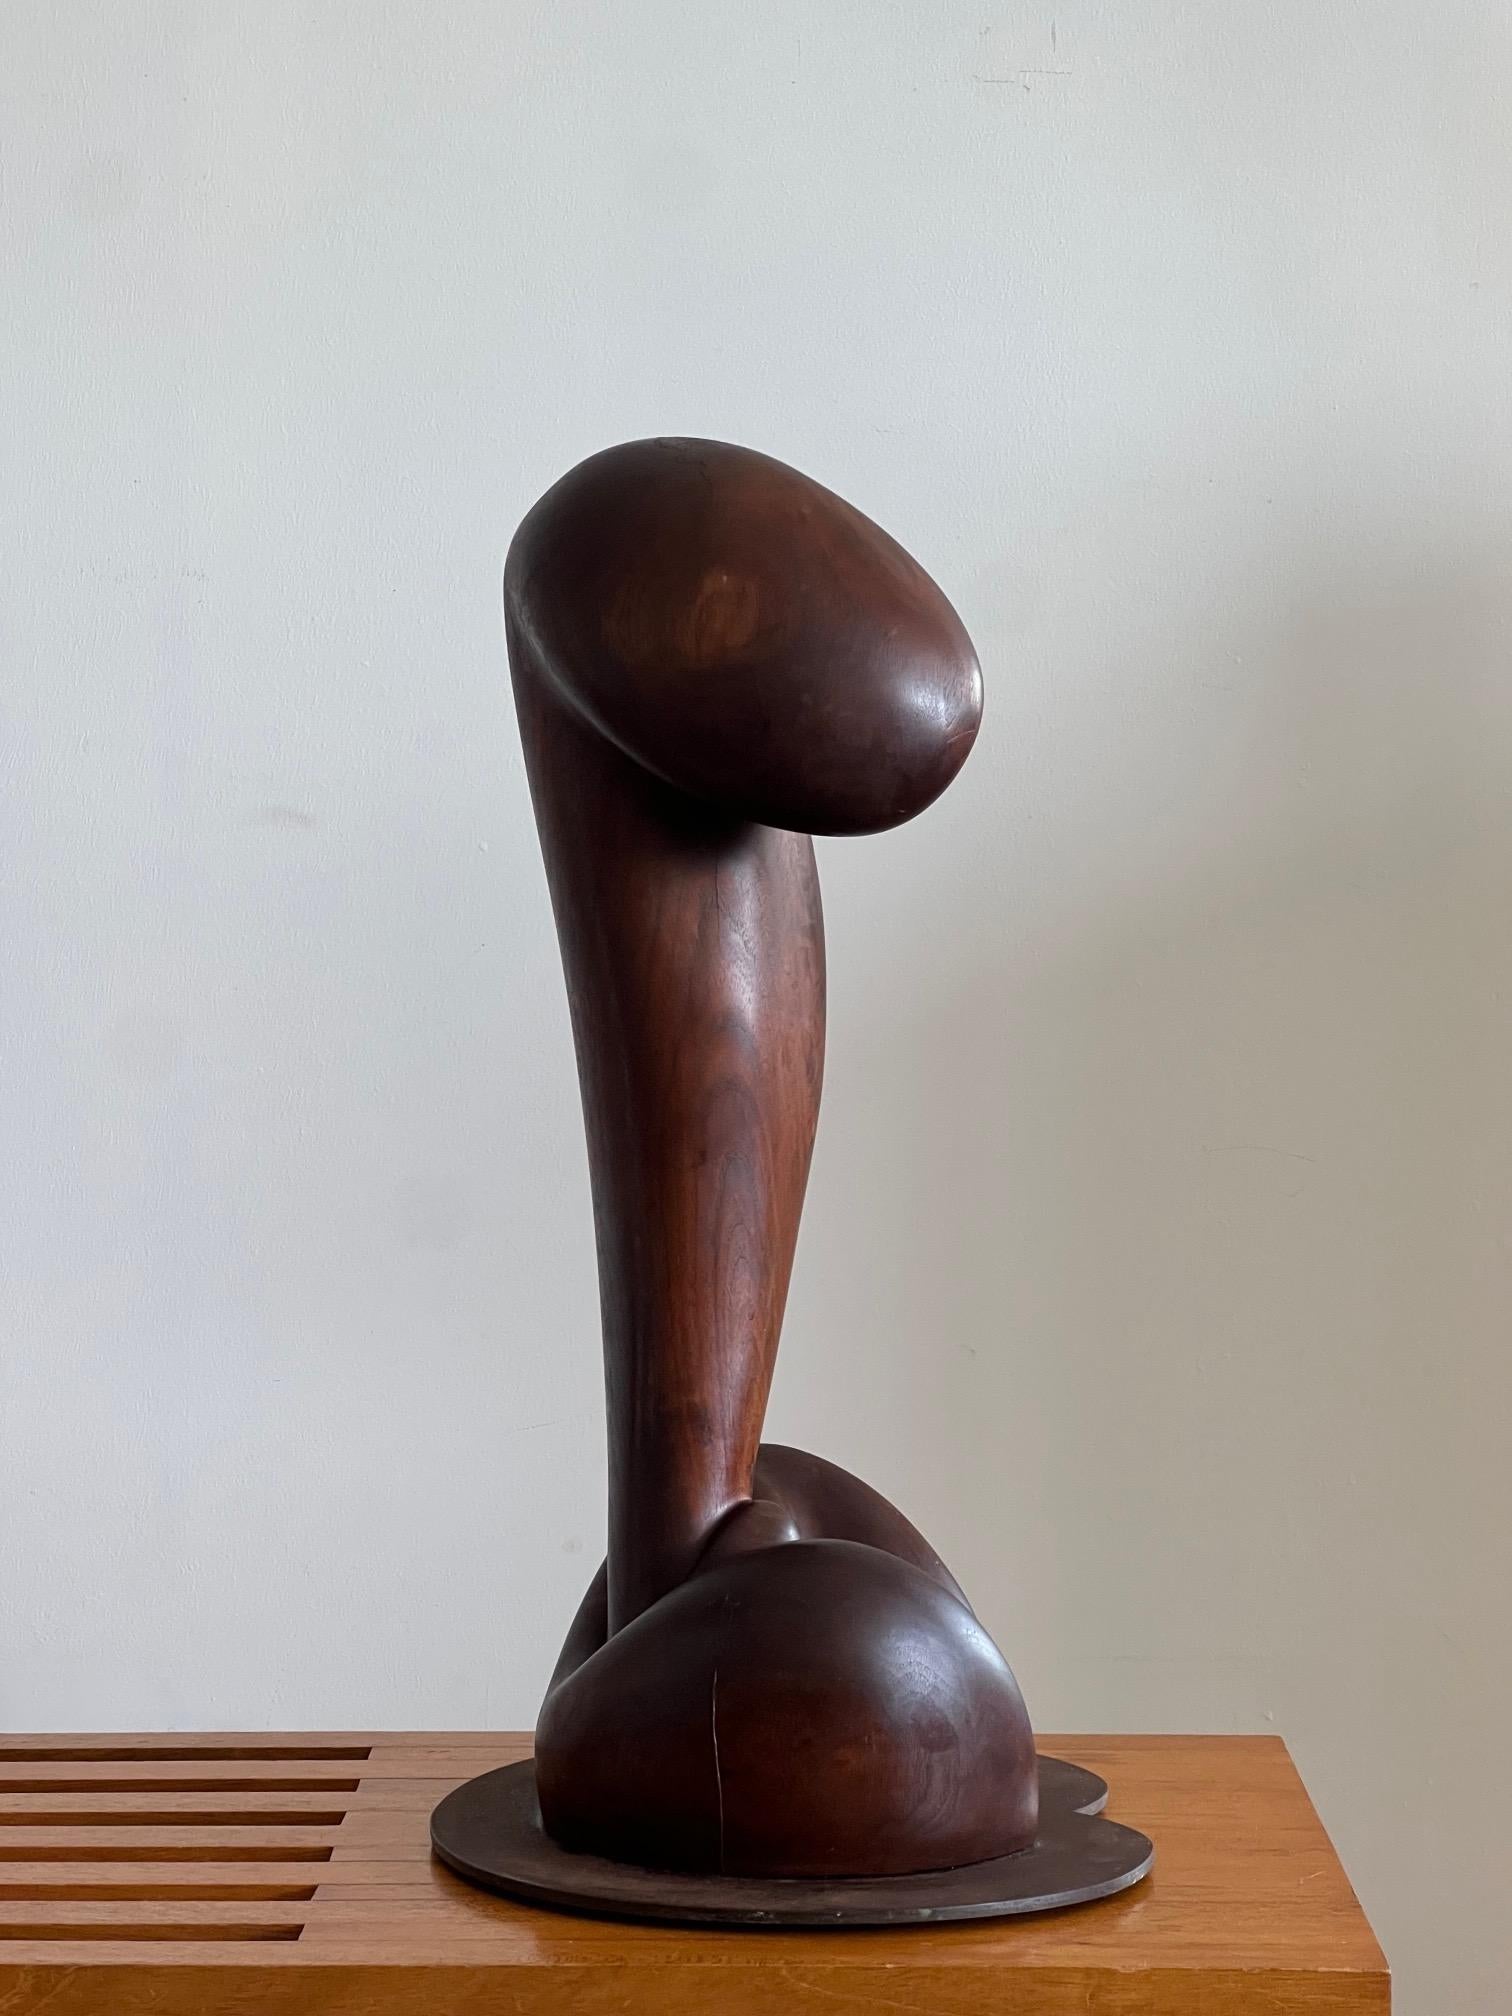 Fantastische, elegante abstrakt-figurative Skulptur, signiert HPB, 1977. Nussbaumholz mit schöner, reicher Patina, auf originalem, vom Künstler hergestelltem Metall, Stahlplatte.